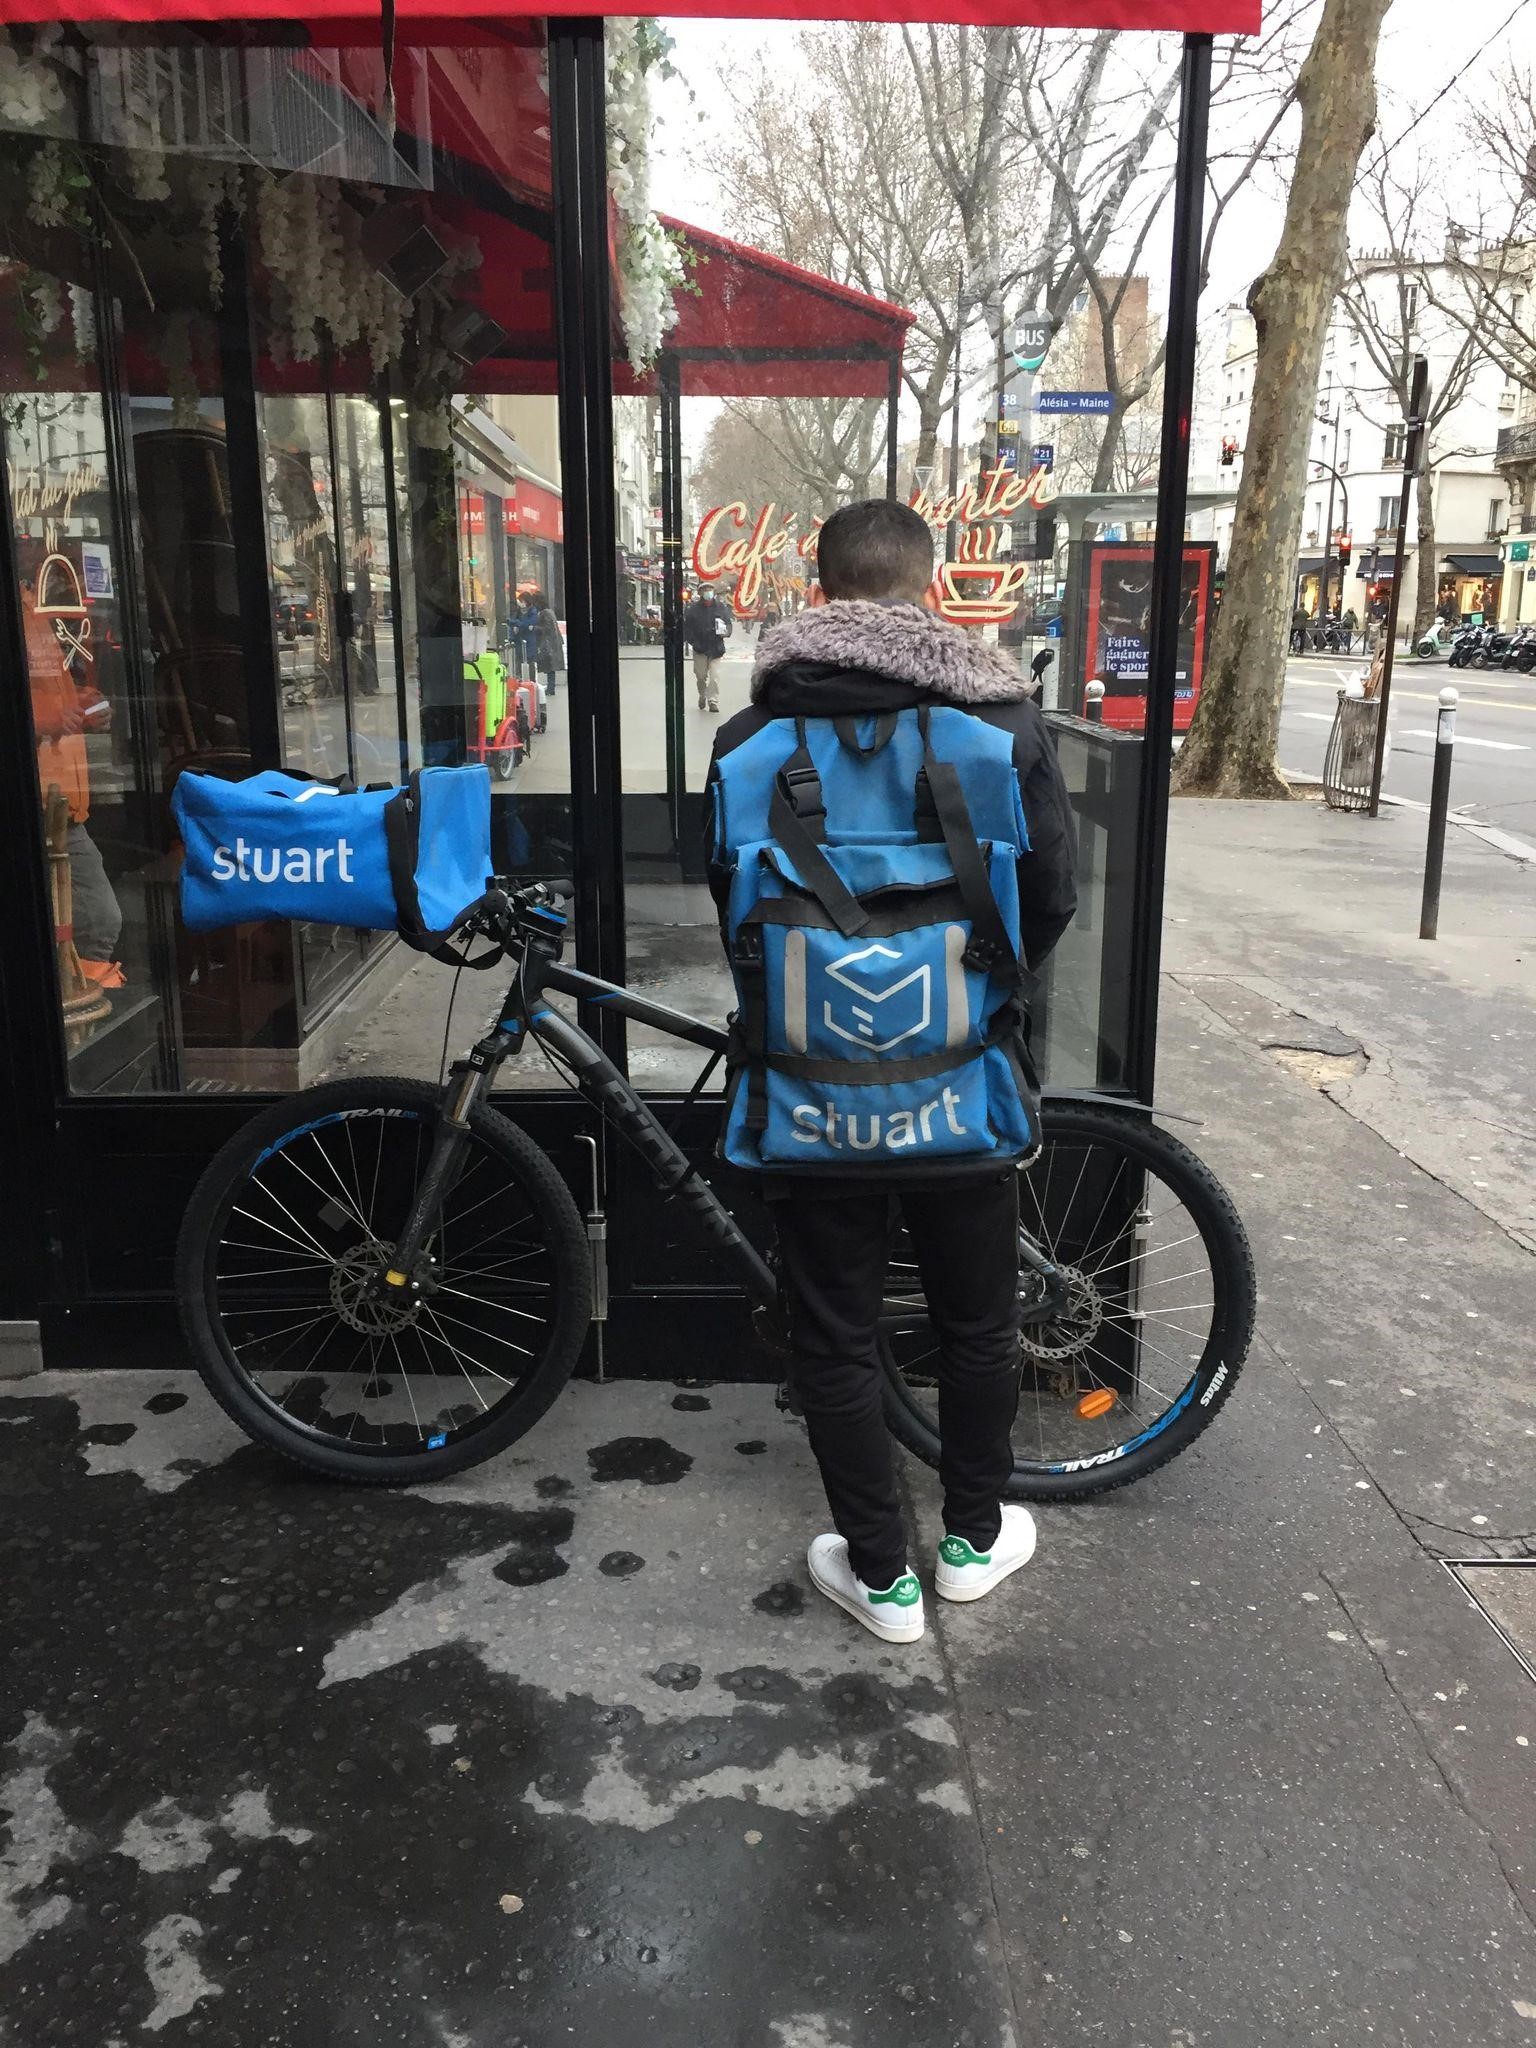 livreurs à vélo deliveroo uber eats